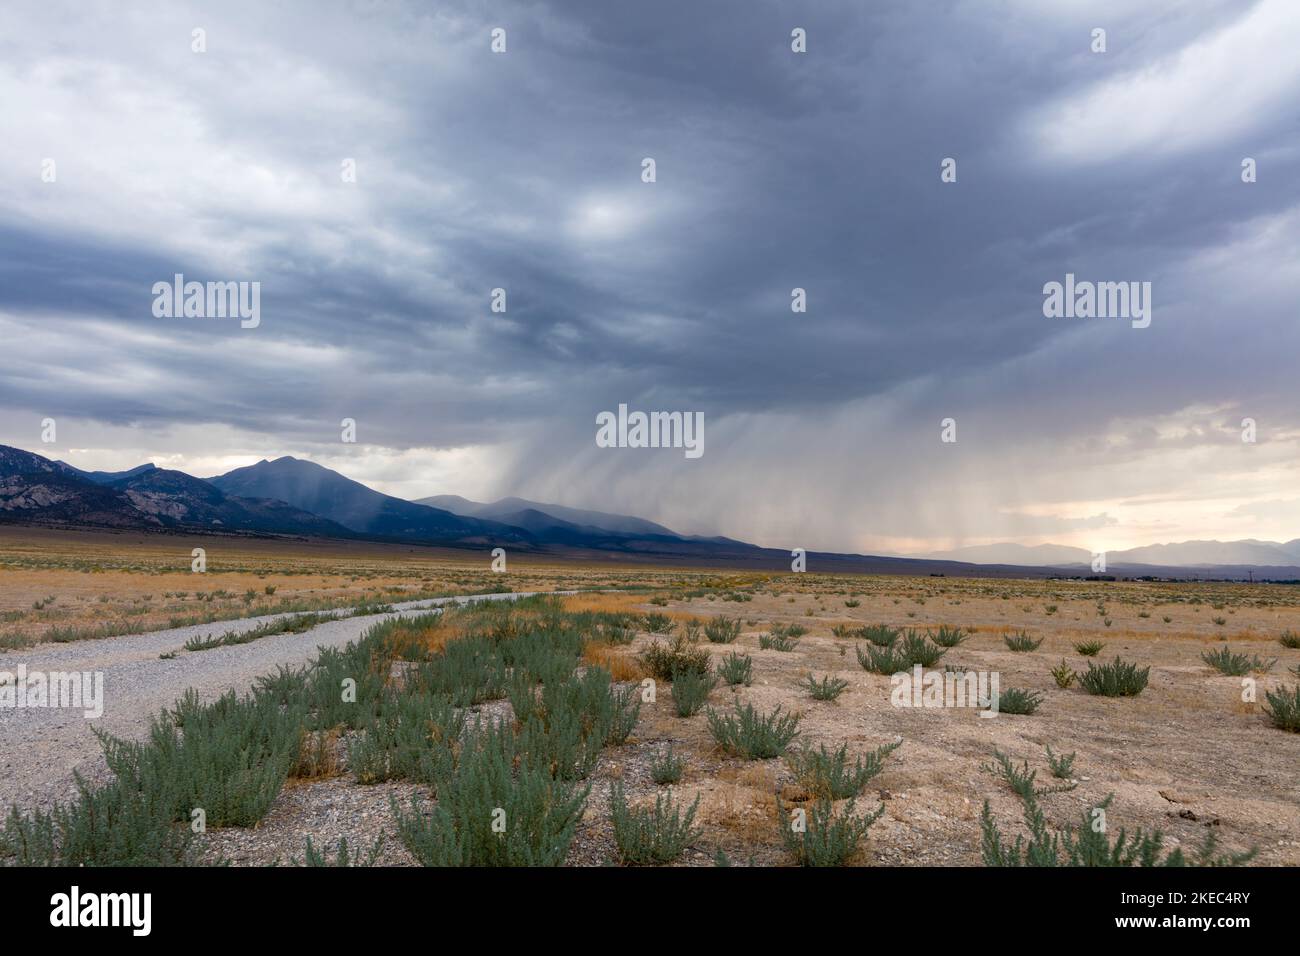 Las nubes de lluvia se reúnen sobre el Parque Nacional de Great Basin y la cordillera de Snake cerca de Baker, Nevada. La tormenta que se acerca oscurece el cielo. Foto de stock